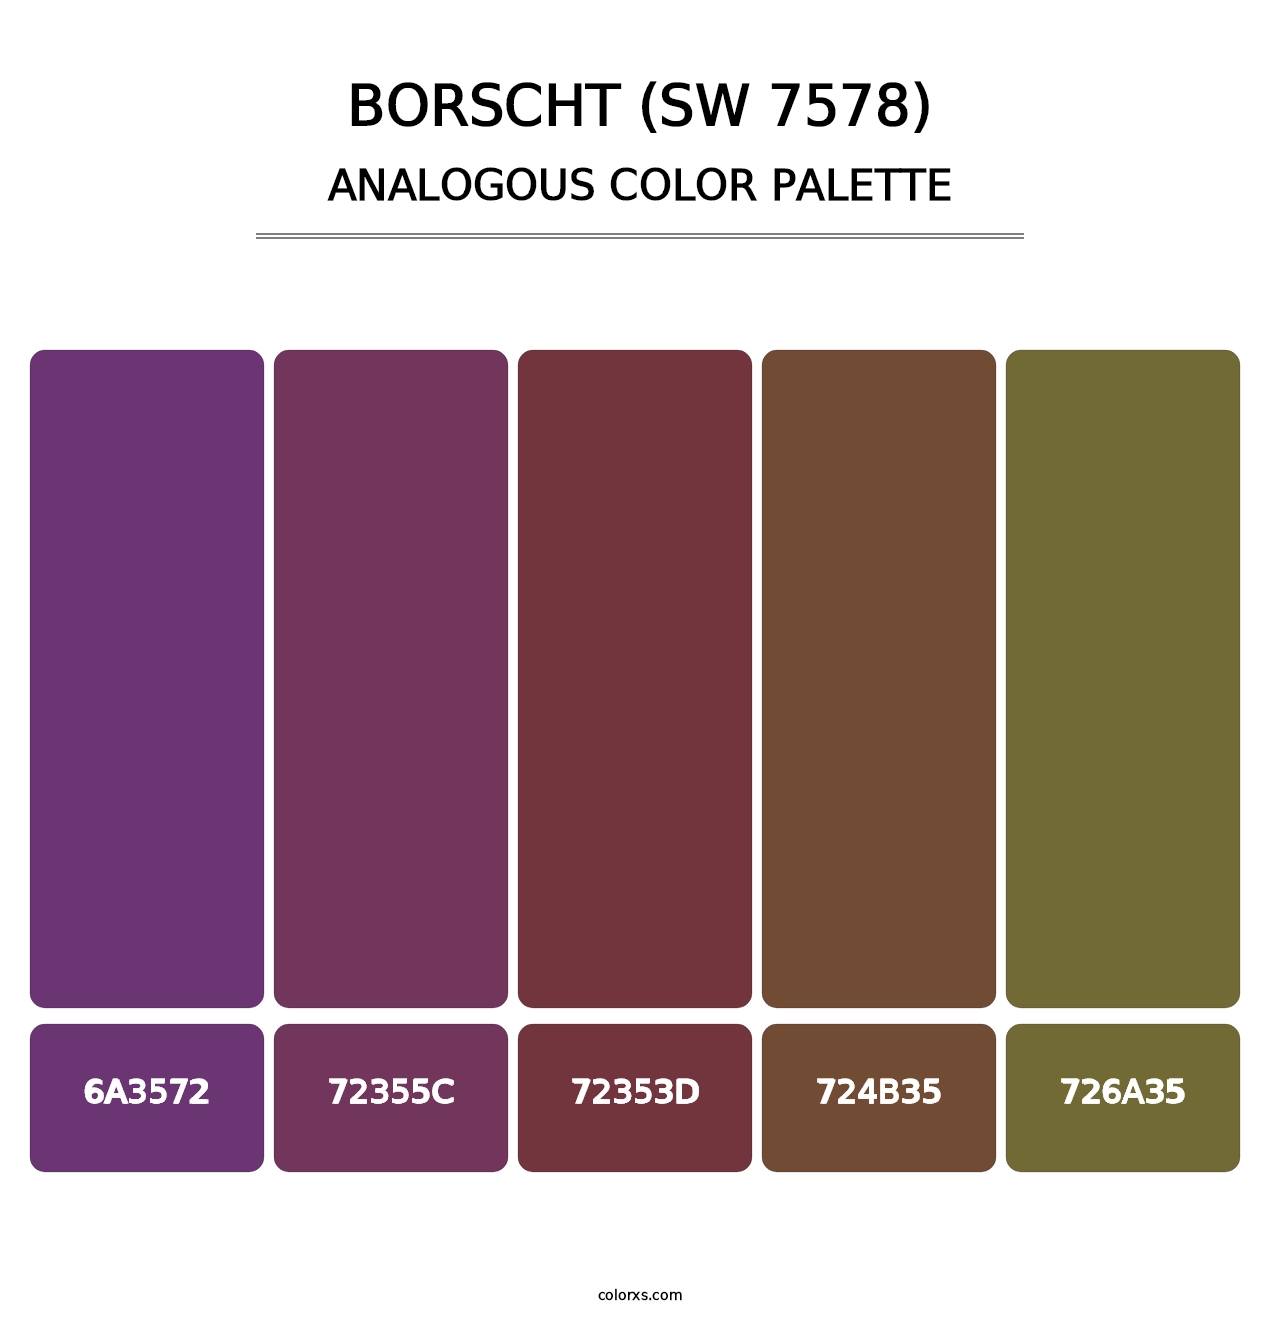 Borscht (SW 7578) - Analogous Color Palette